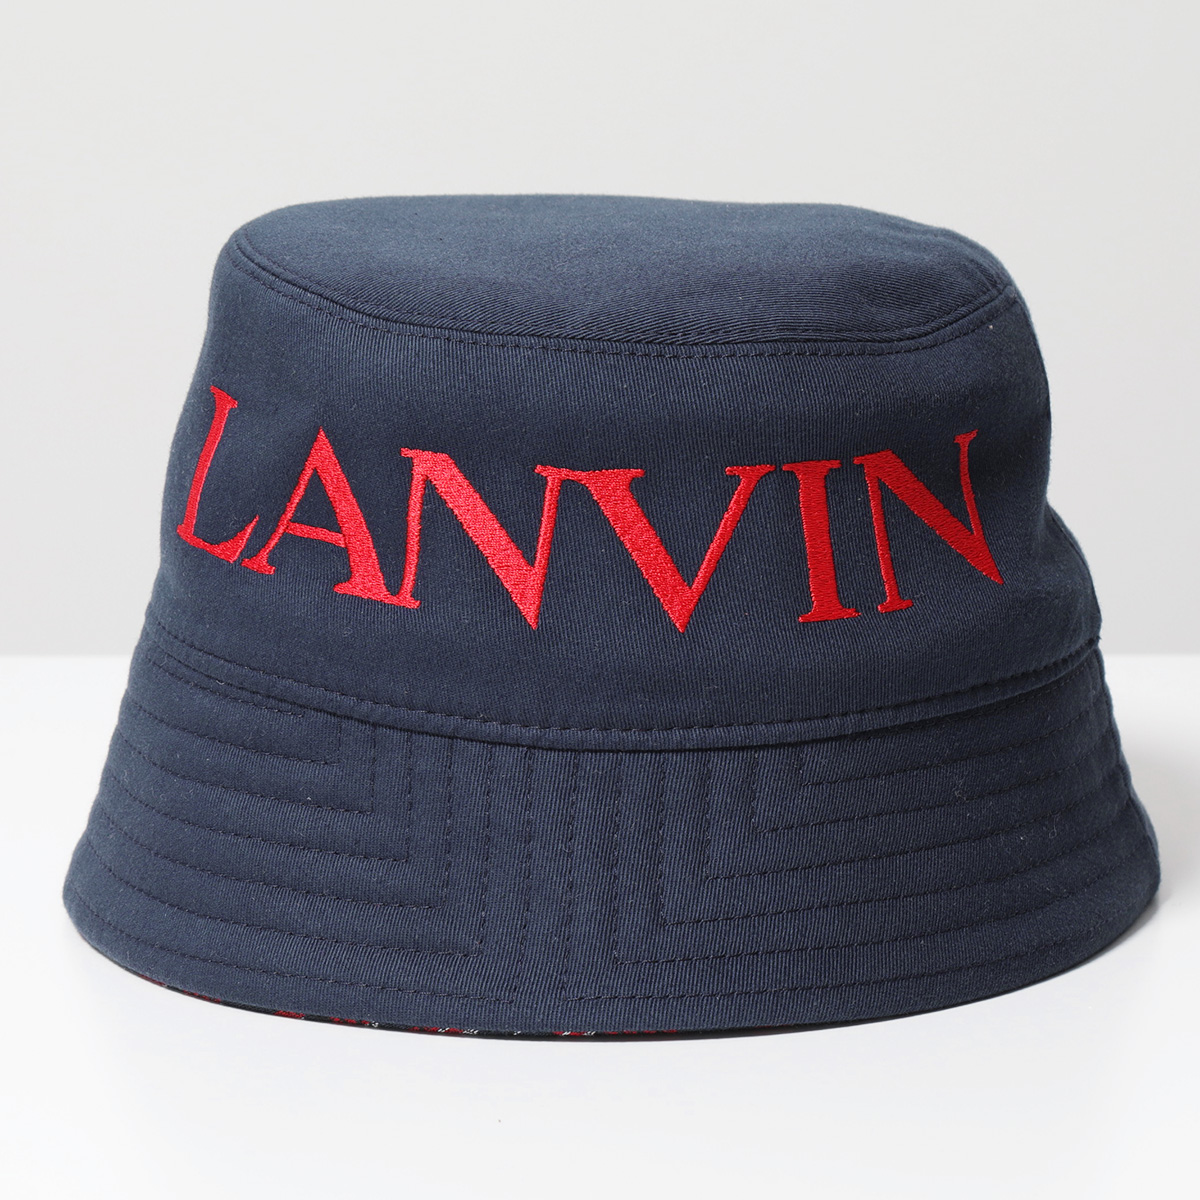 LANVIN ランバン バケットハット AM HANHOI COJE P22 メンズ BOB HAT リバーシブル 帽子 ロゴ刺繍×モノグラム  3524/BRIGHT-RED+DARK-BLUE | インポートセレクト musee